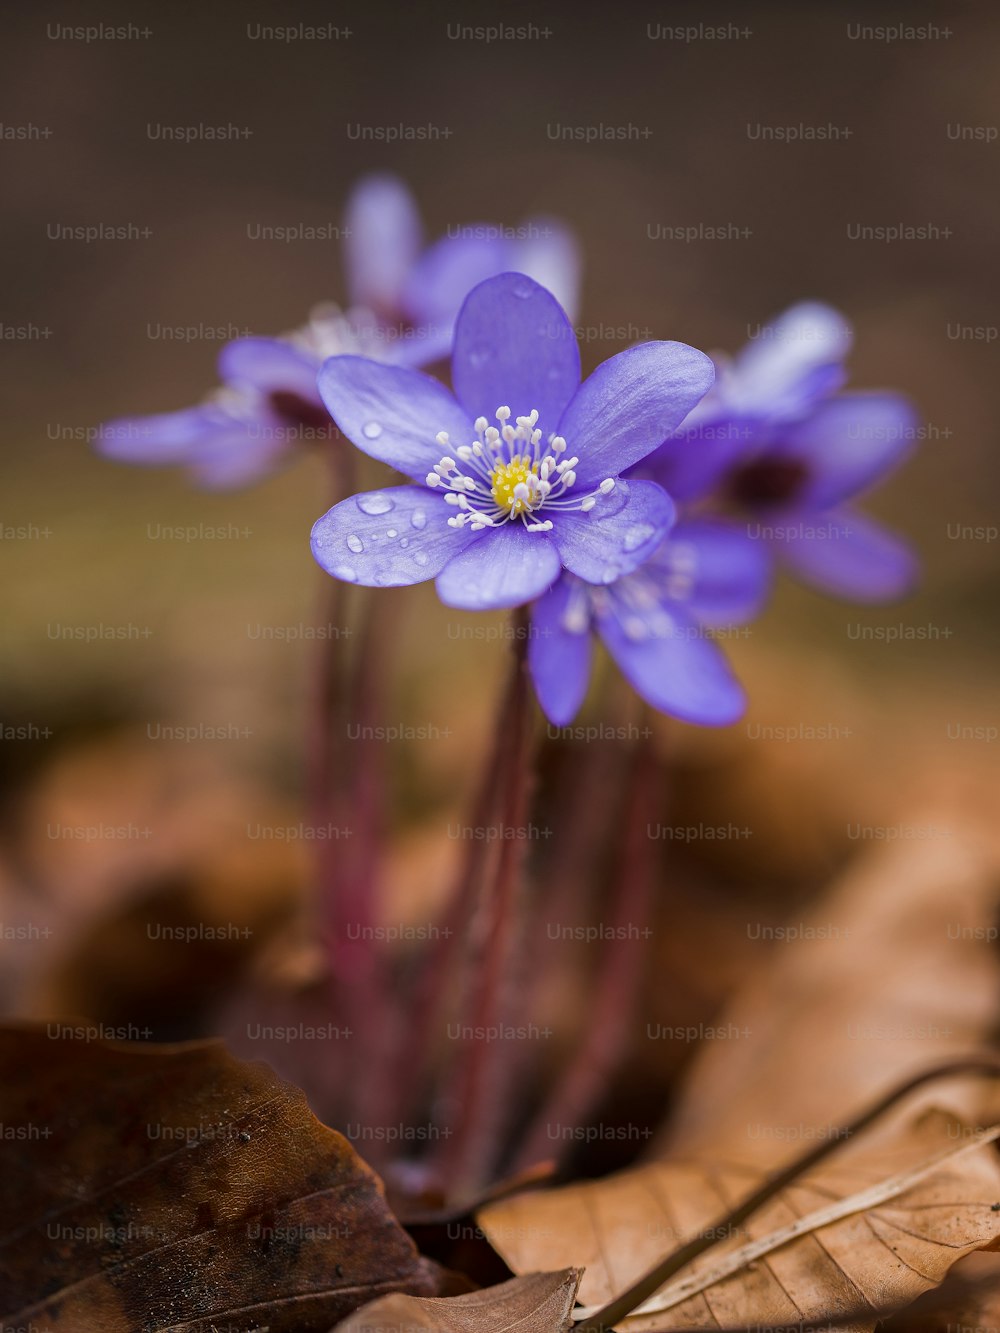 Un primer plano de una flor púrpura en el suelo